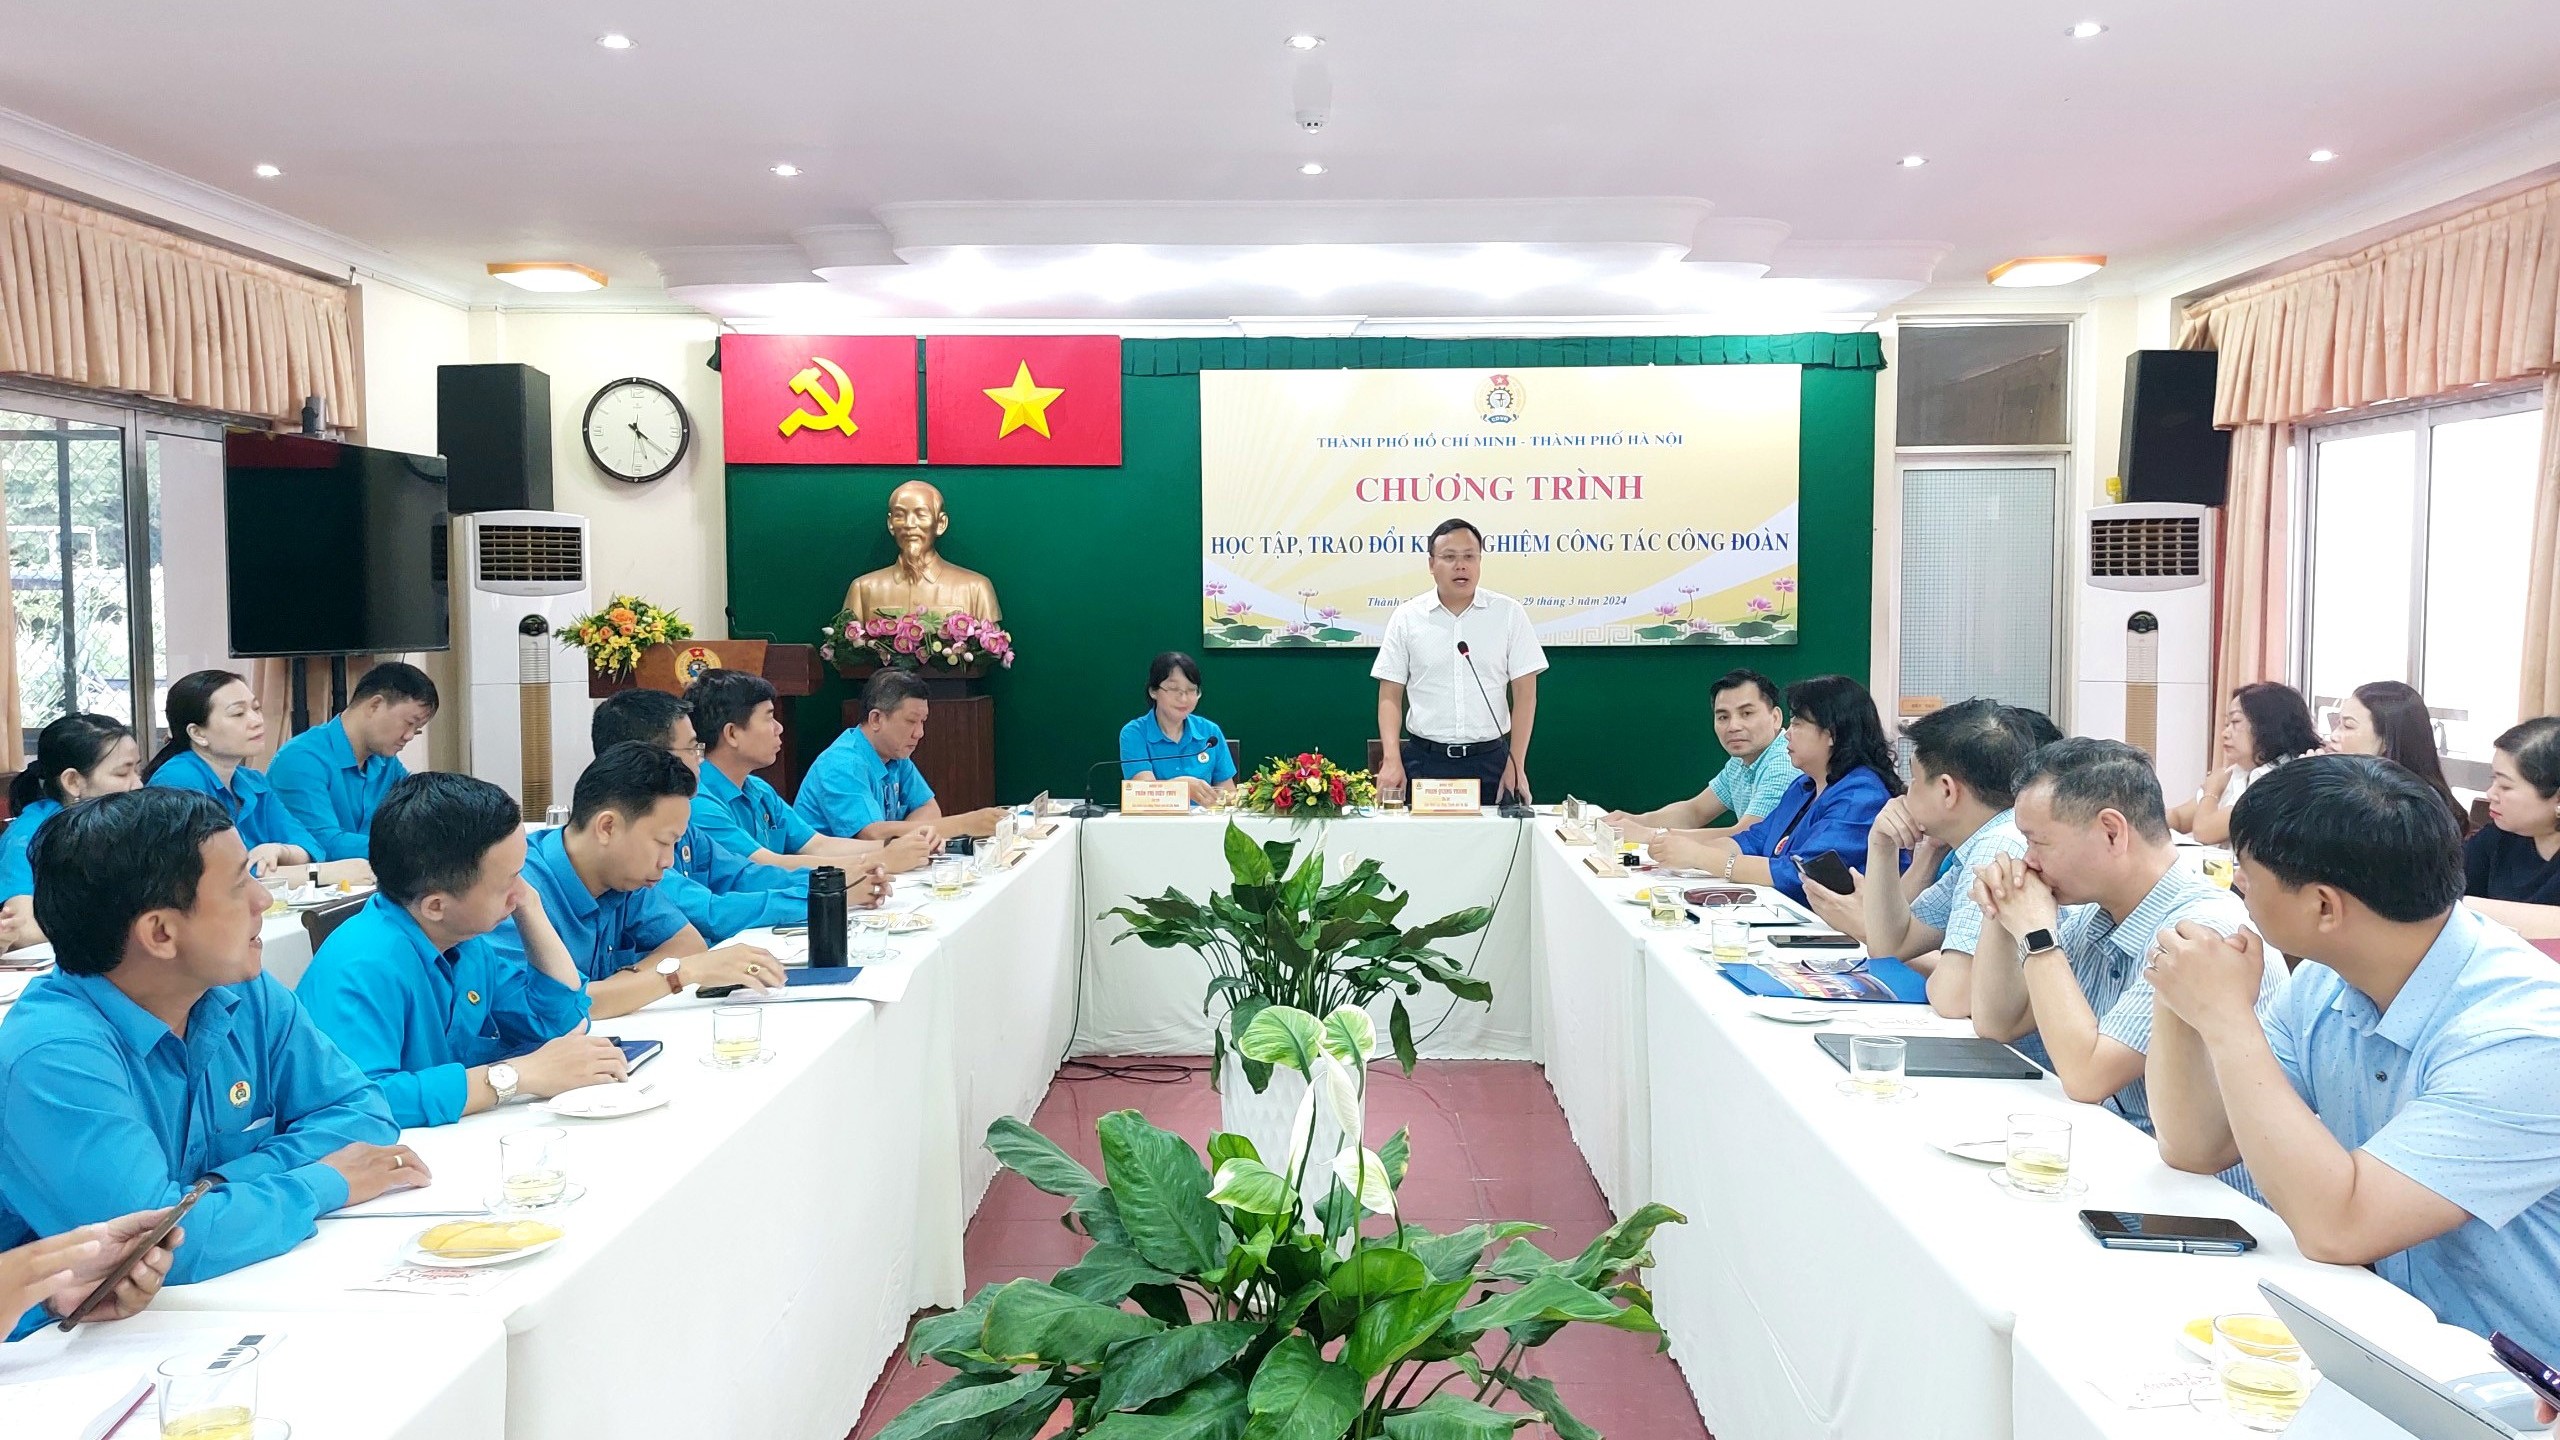 LĐLĐ Thành phố Hà Nội và LĐLĐ Thành phố Hồ Chí Minh trao đổi kinh nghiệm triển khai công tác công đoàn